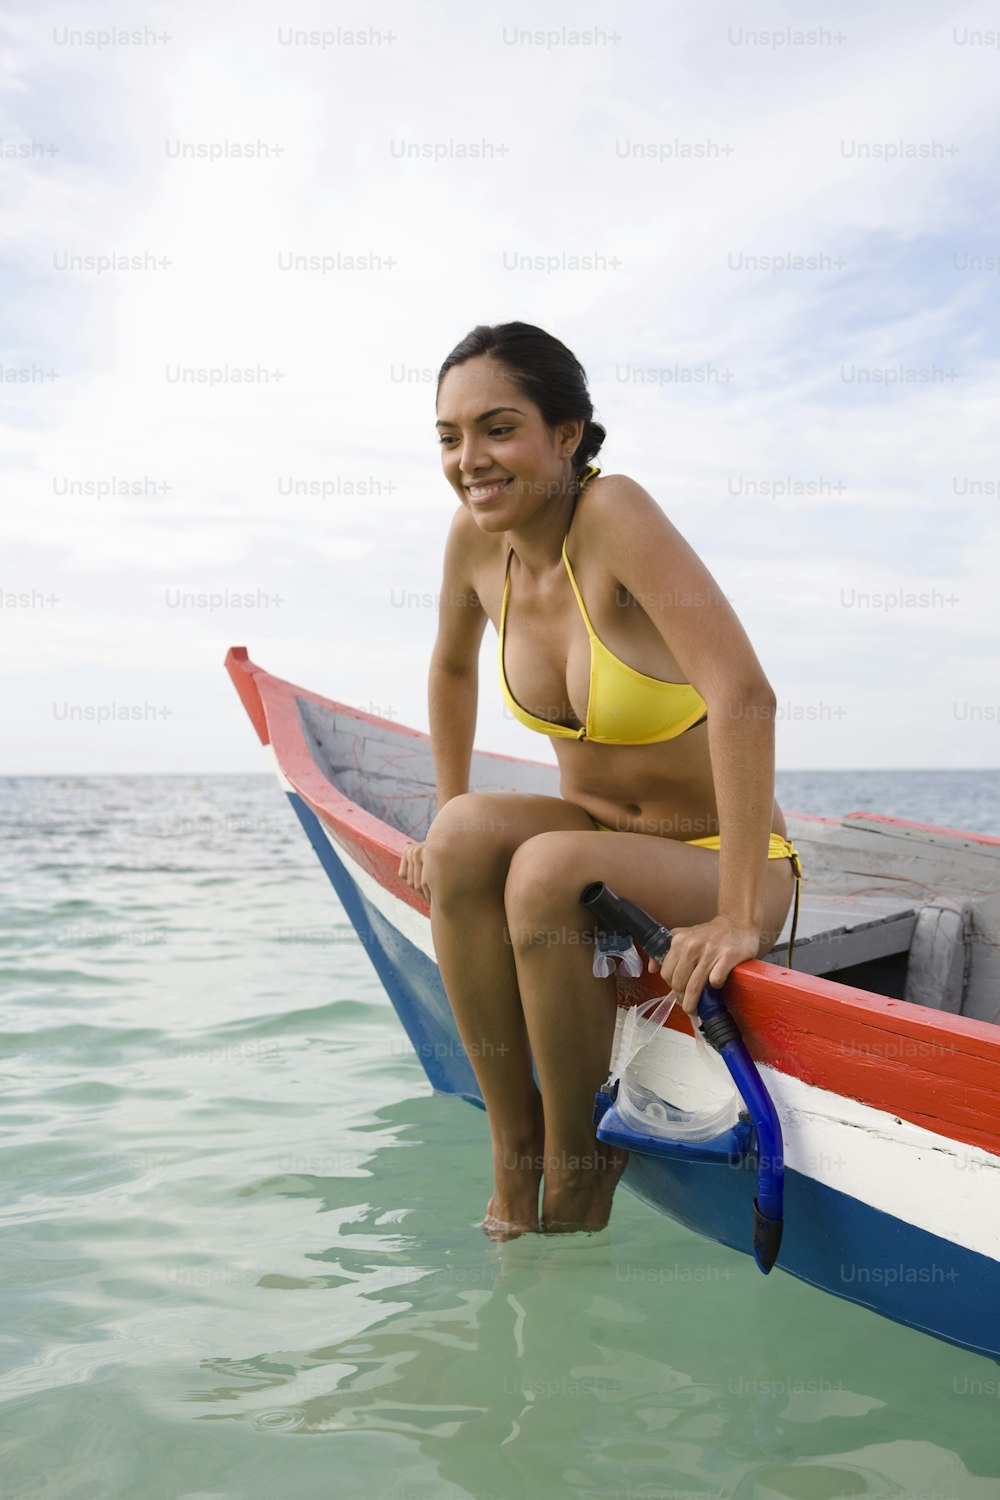 Una donna in un bikini giallo seduta su una barca